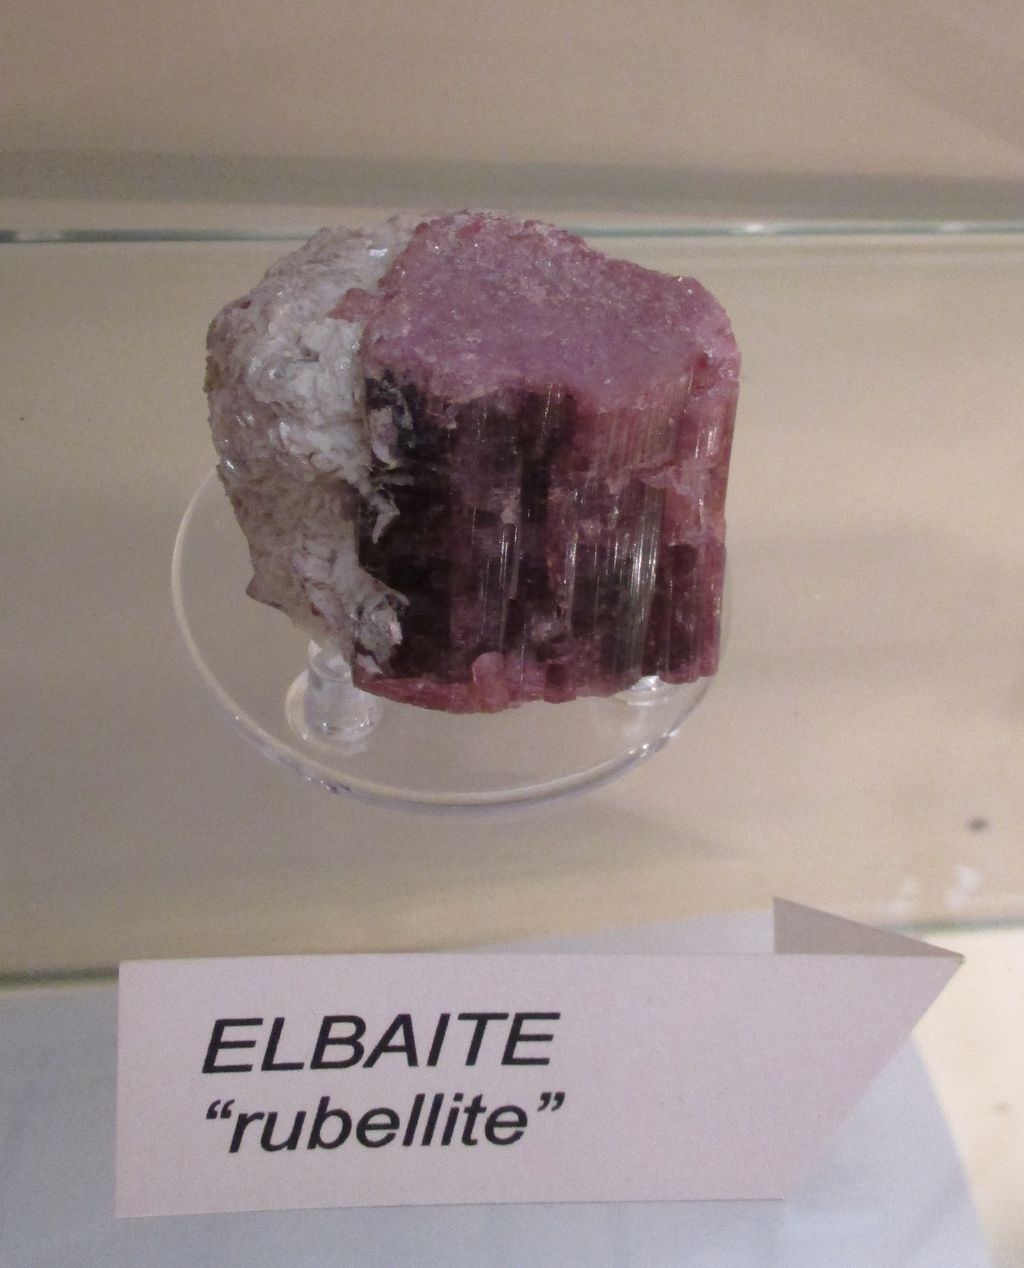 Elbaite (esemplare)